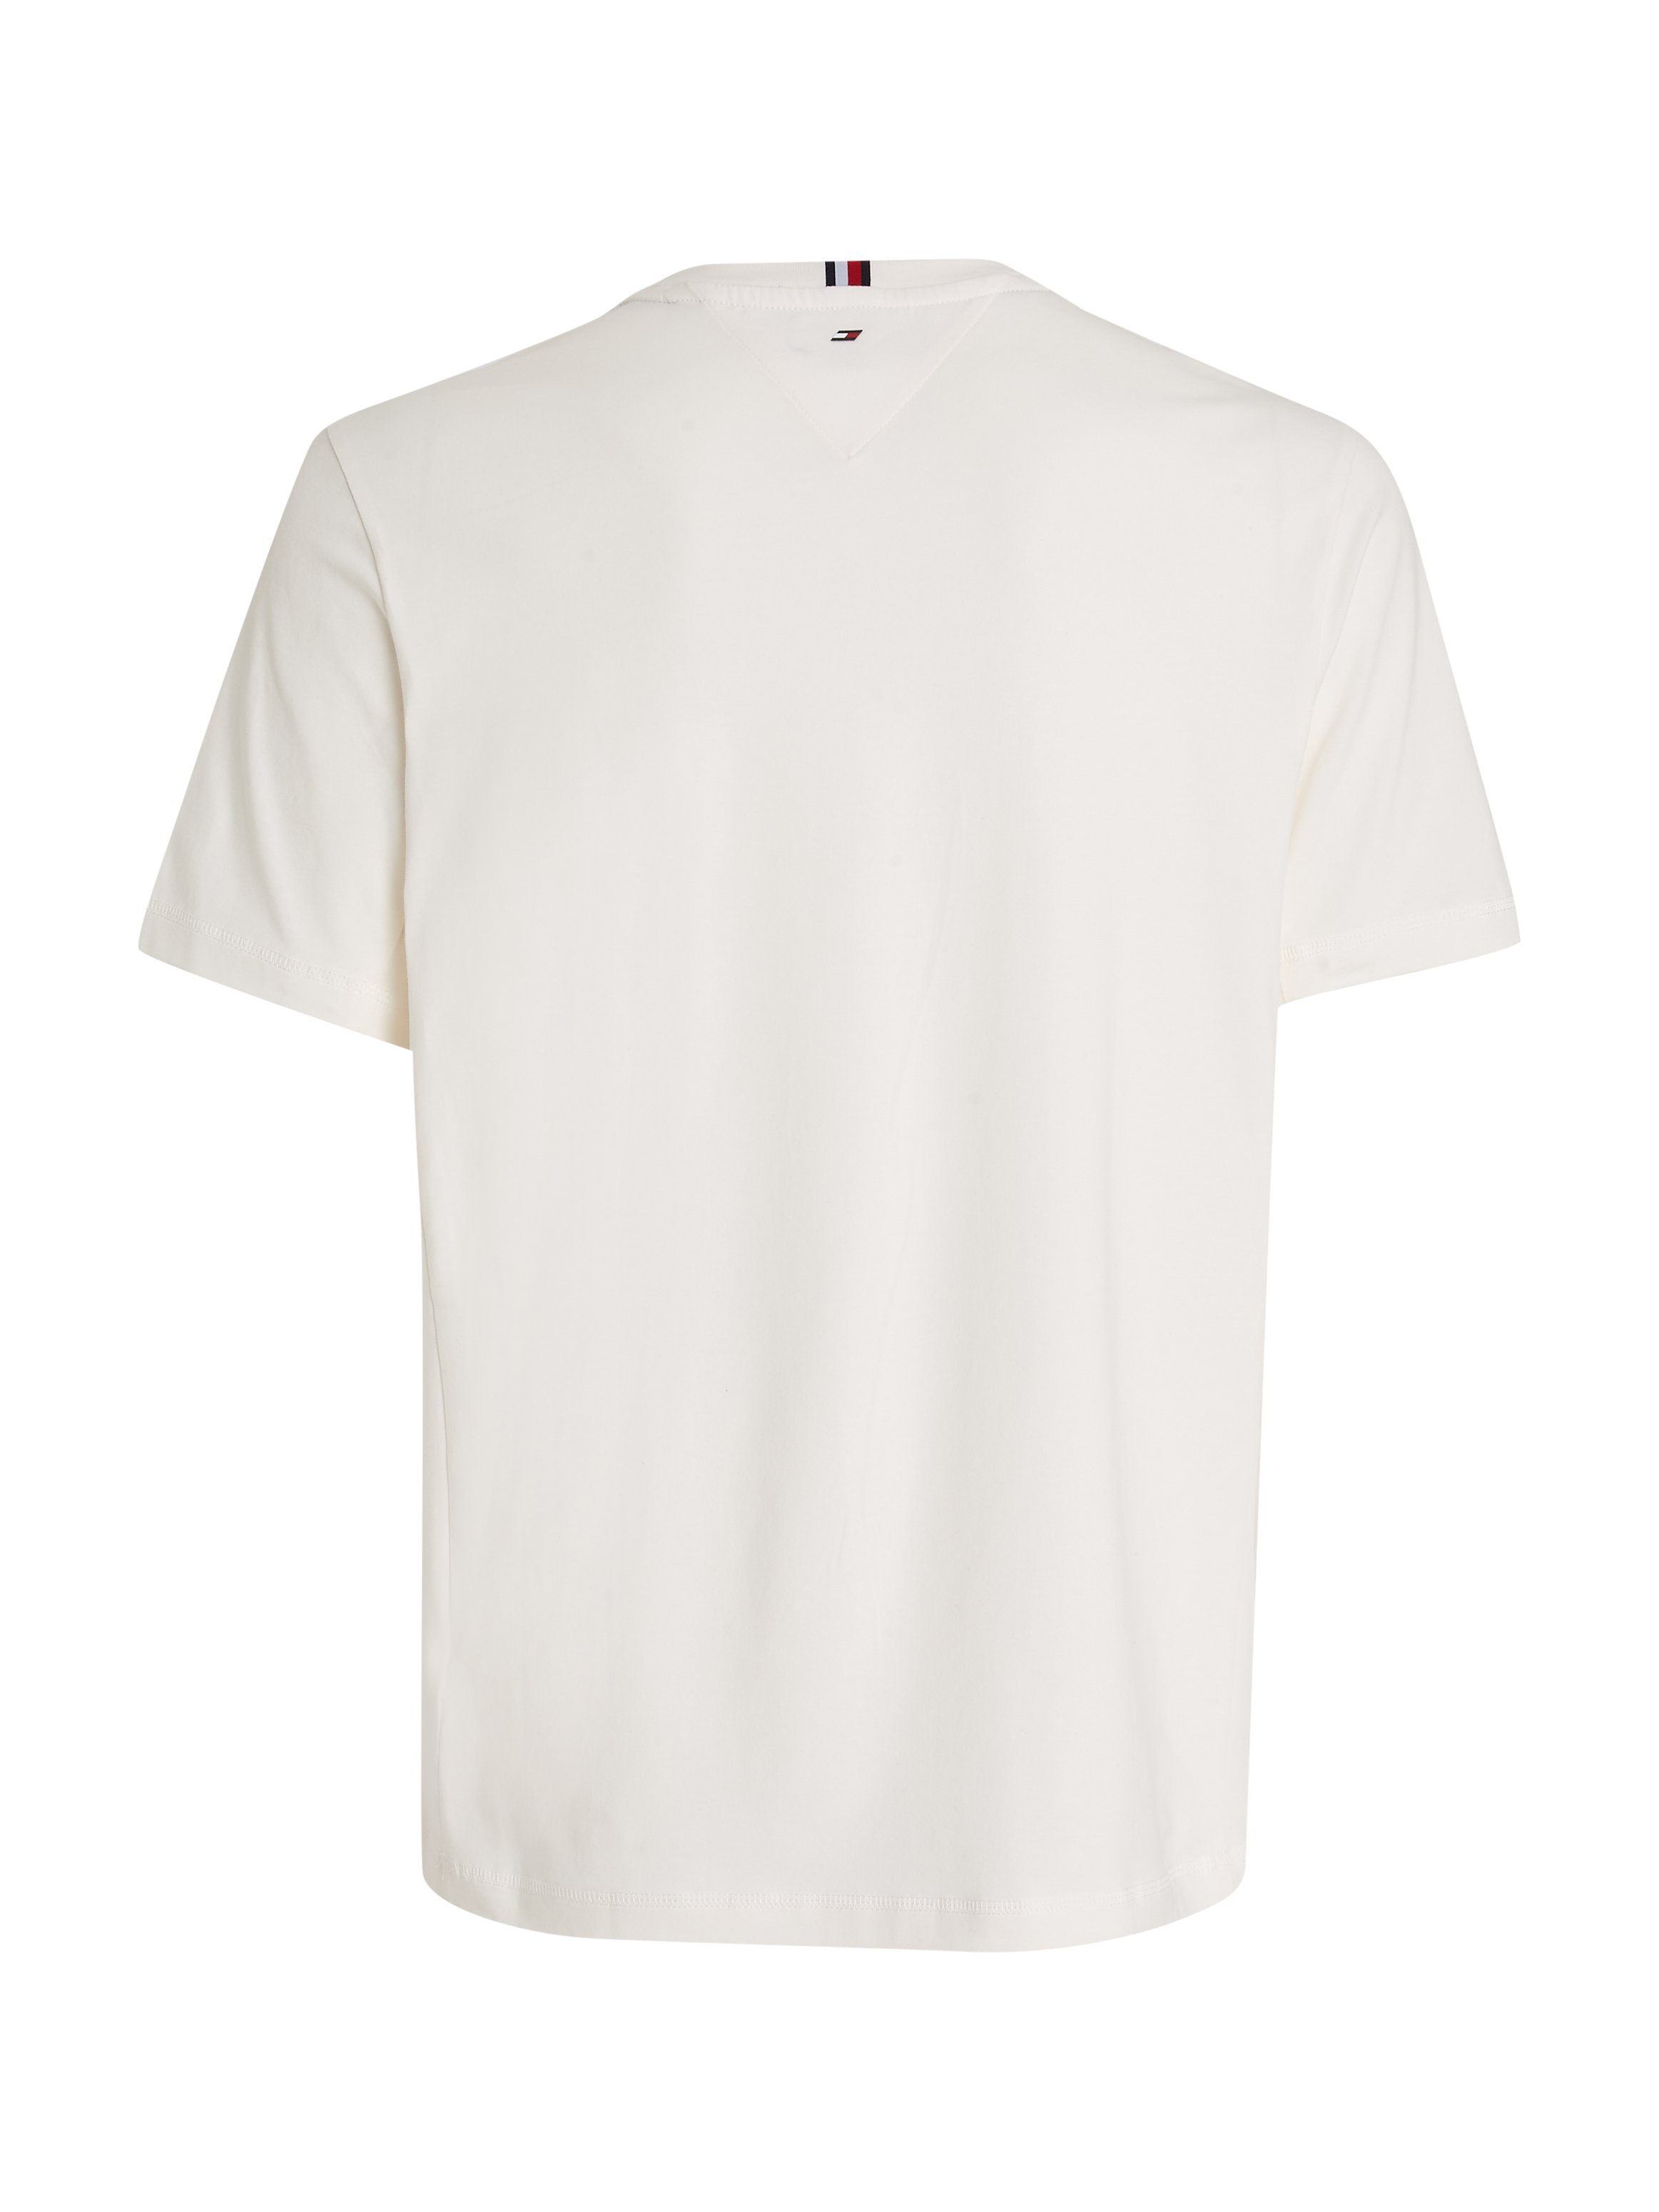 der ESSENTIAL Hilfiger auf Logodruck LOGO Hilfiger Tommy Ancient White Tommy TEE Sport Brust BIG T-Shirt mit